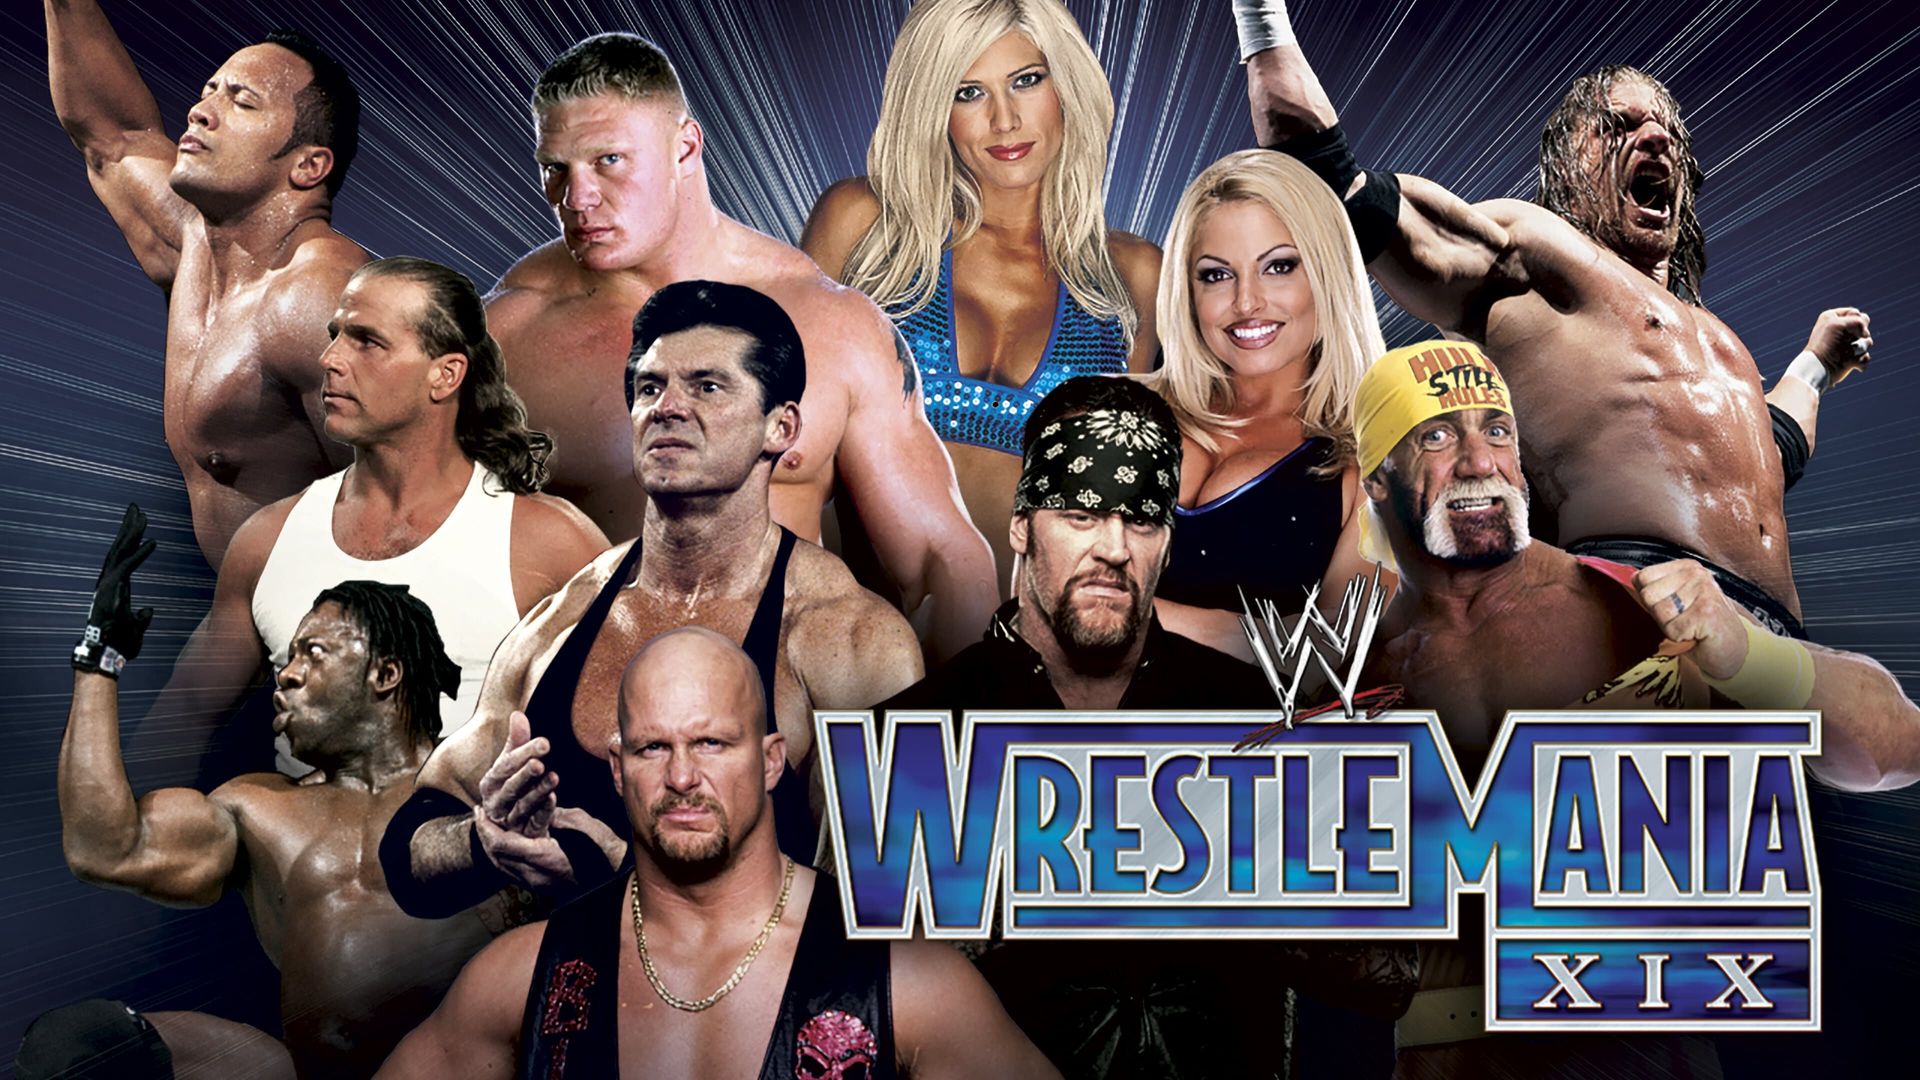 WrestleMania XIX background